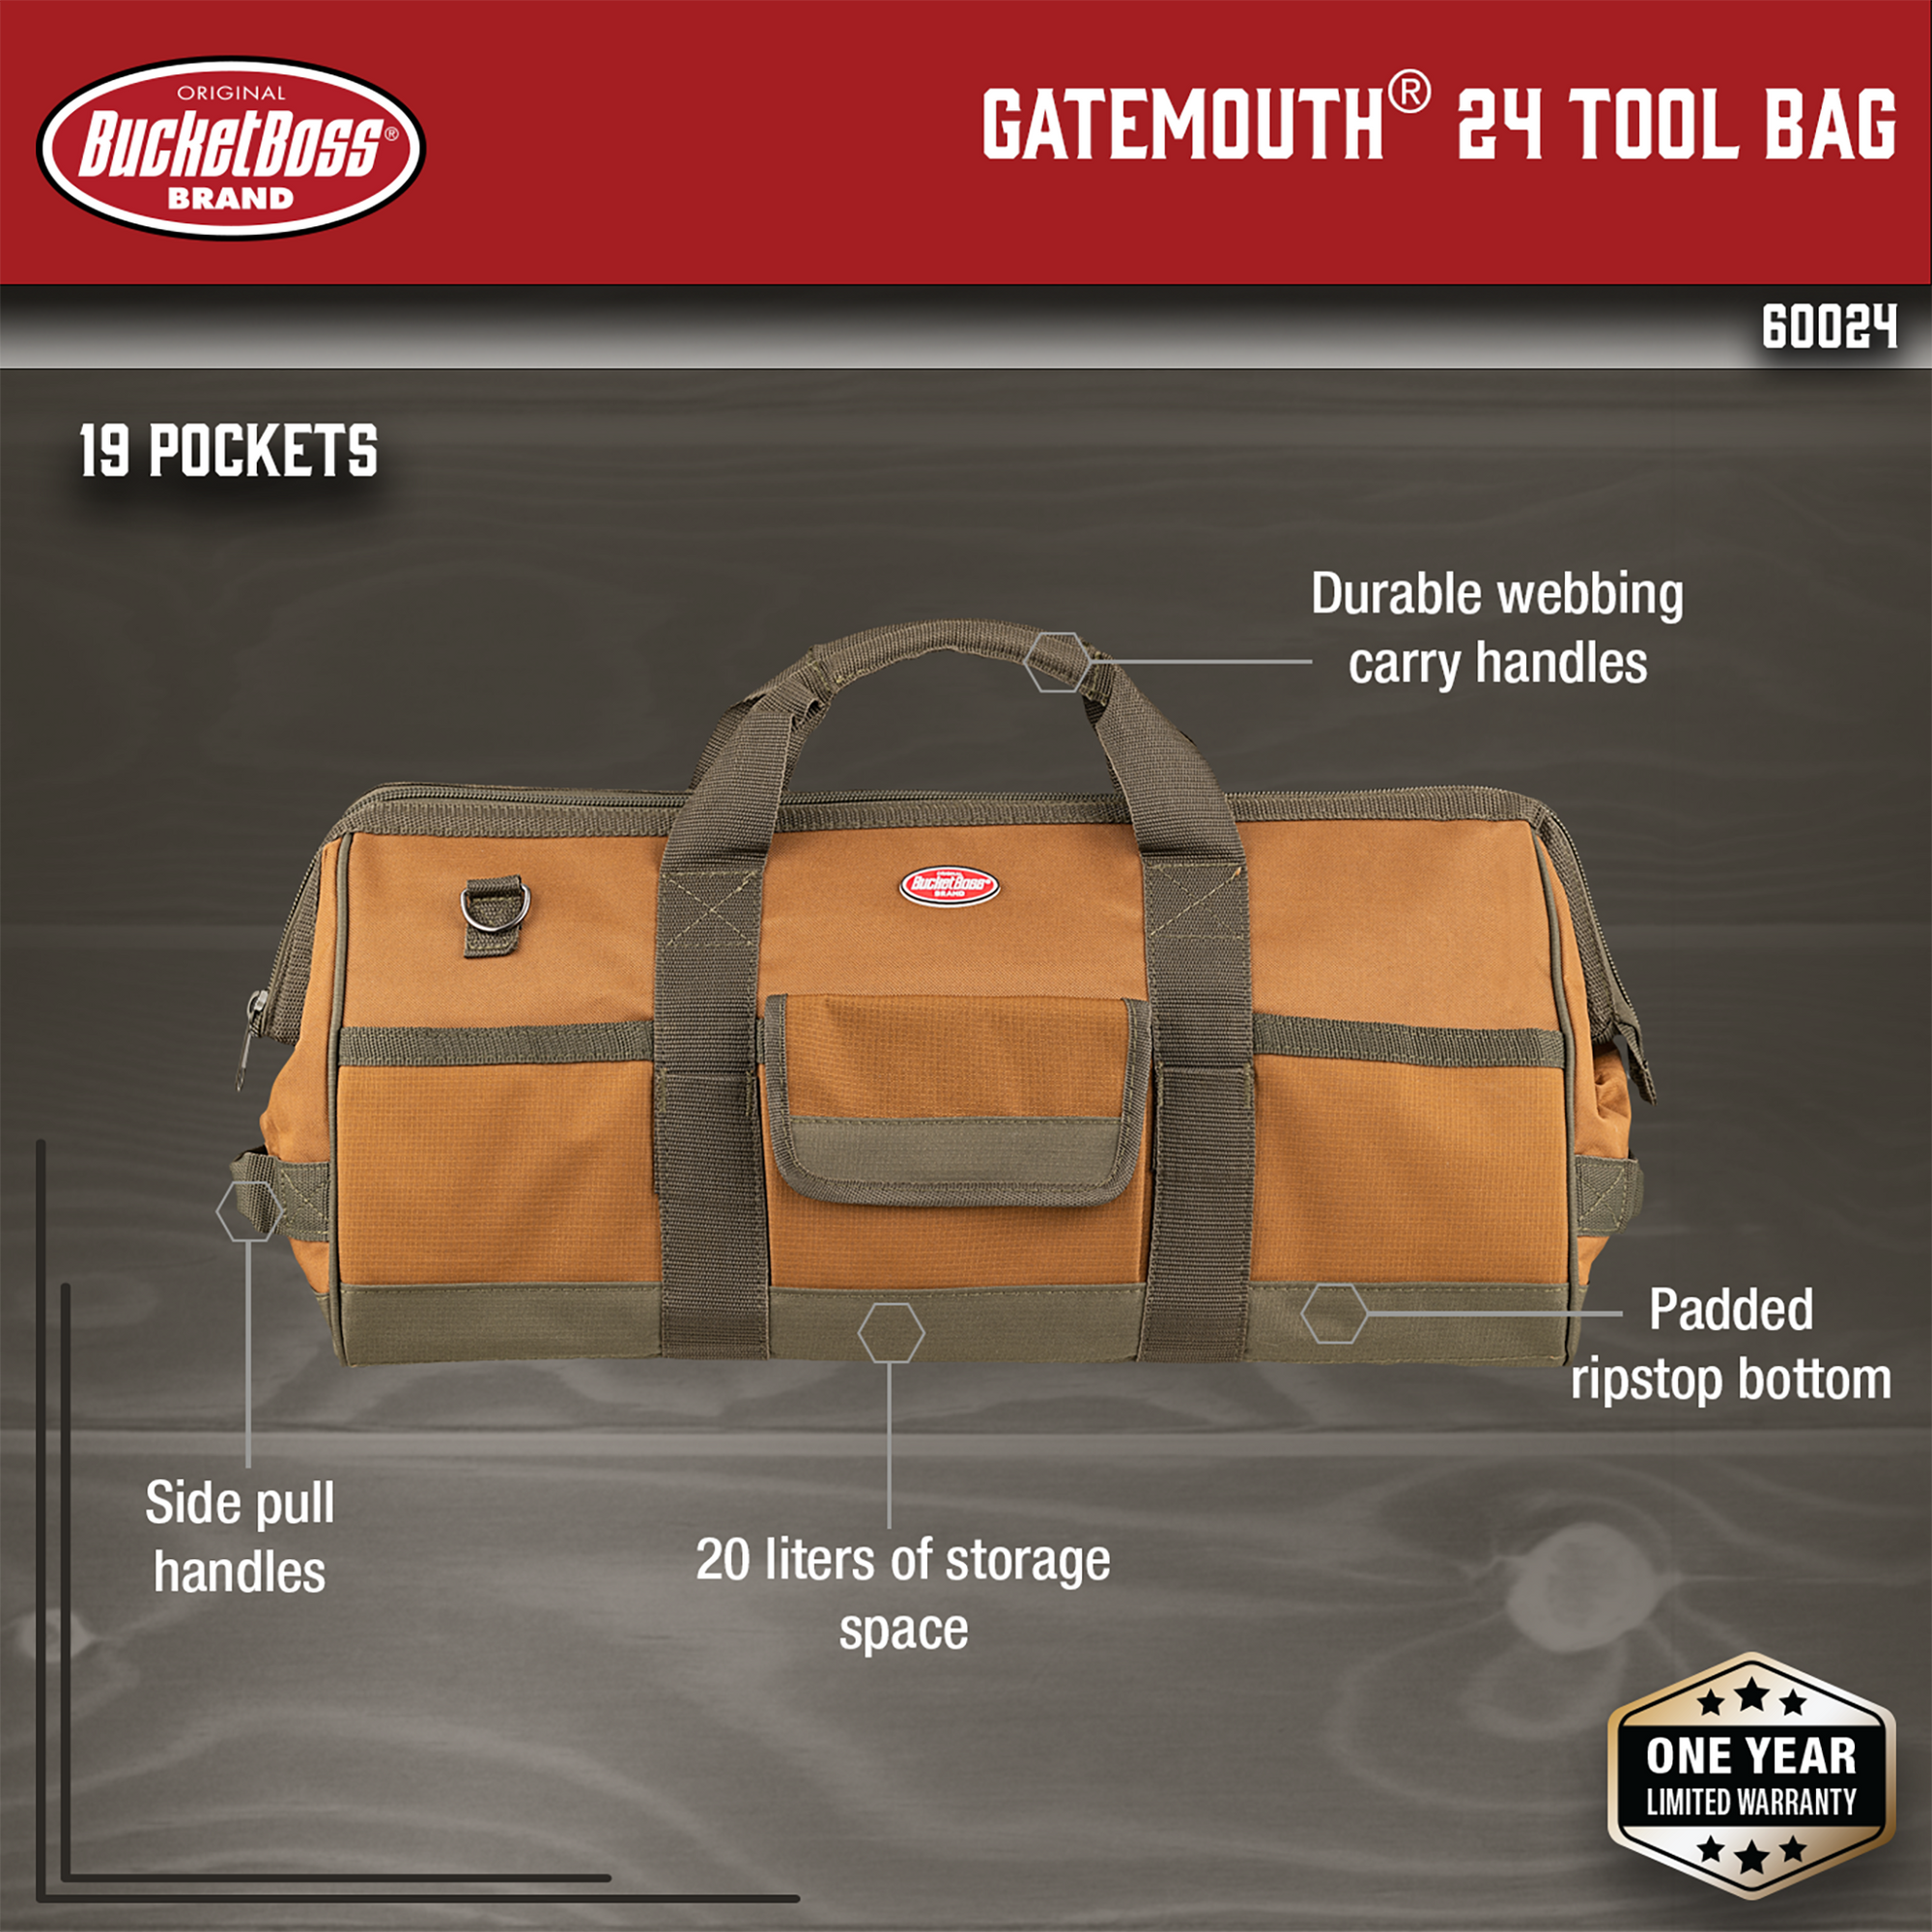 Gatemouth 24 Tool Bag